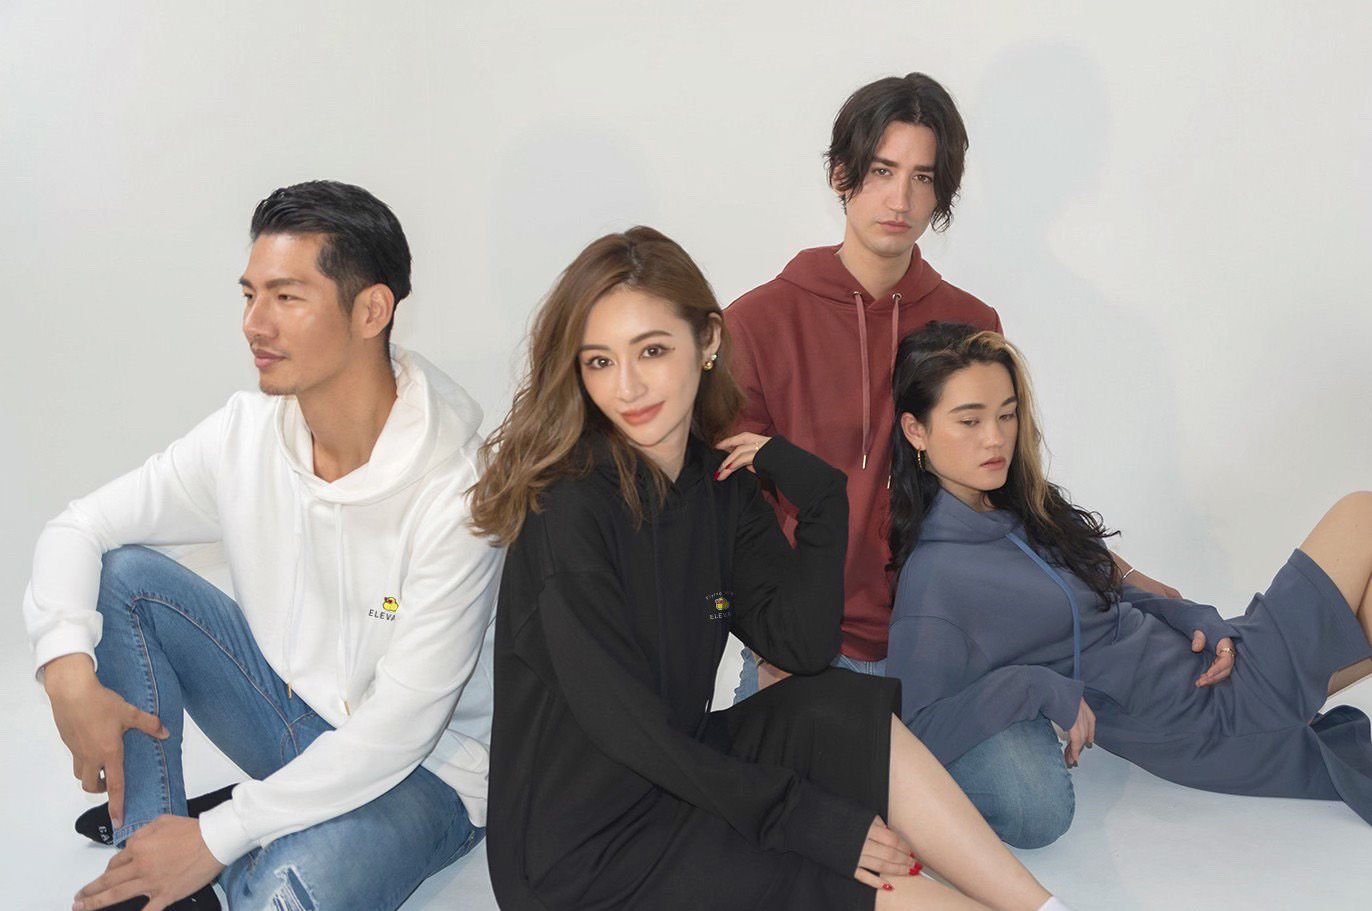 ママインフルエンサー 宮崎麗果 のd2cファッションブランド Elevate 3月31日12時にデビュー 株式会社shoichiのプレスリリース